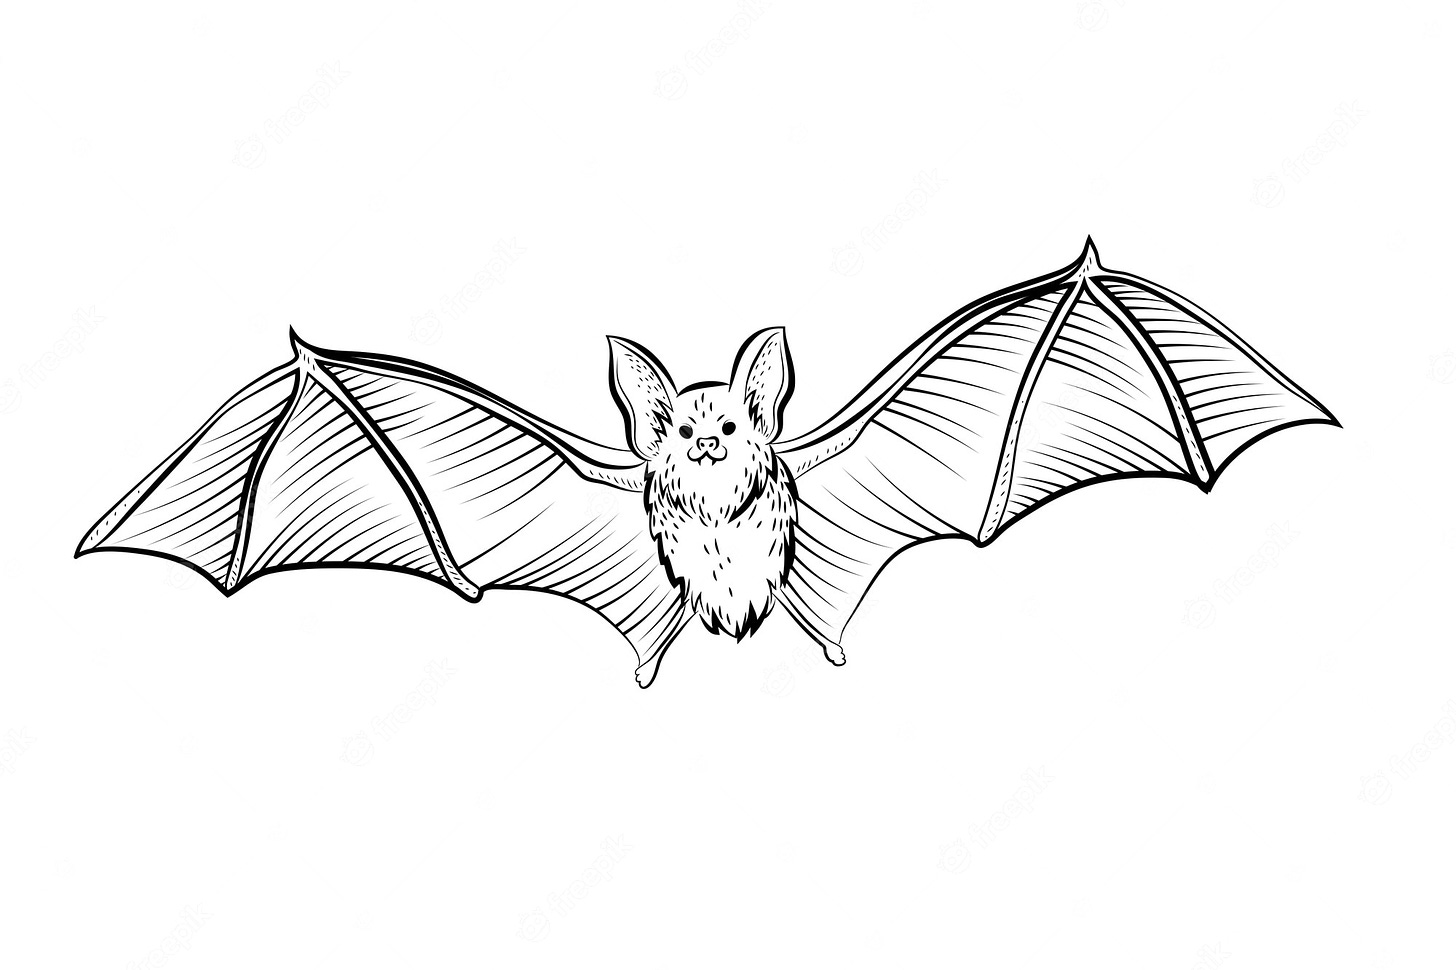 Bat Drawing Images - Free Download on Freepik